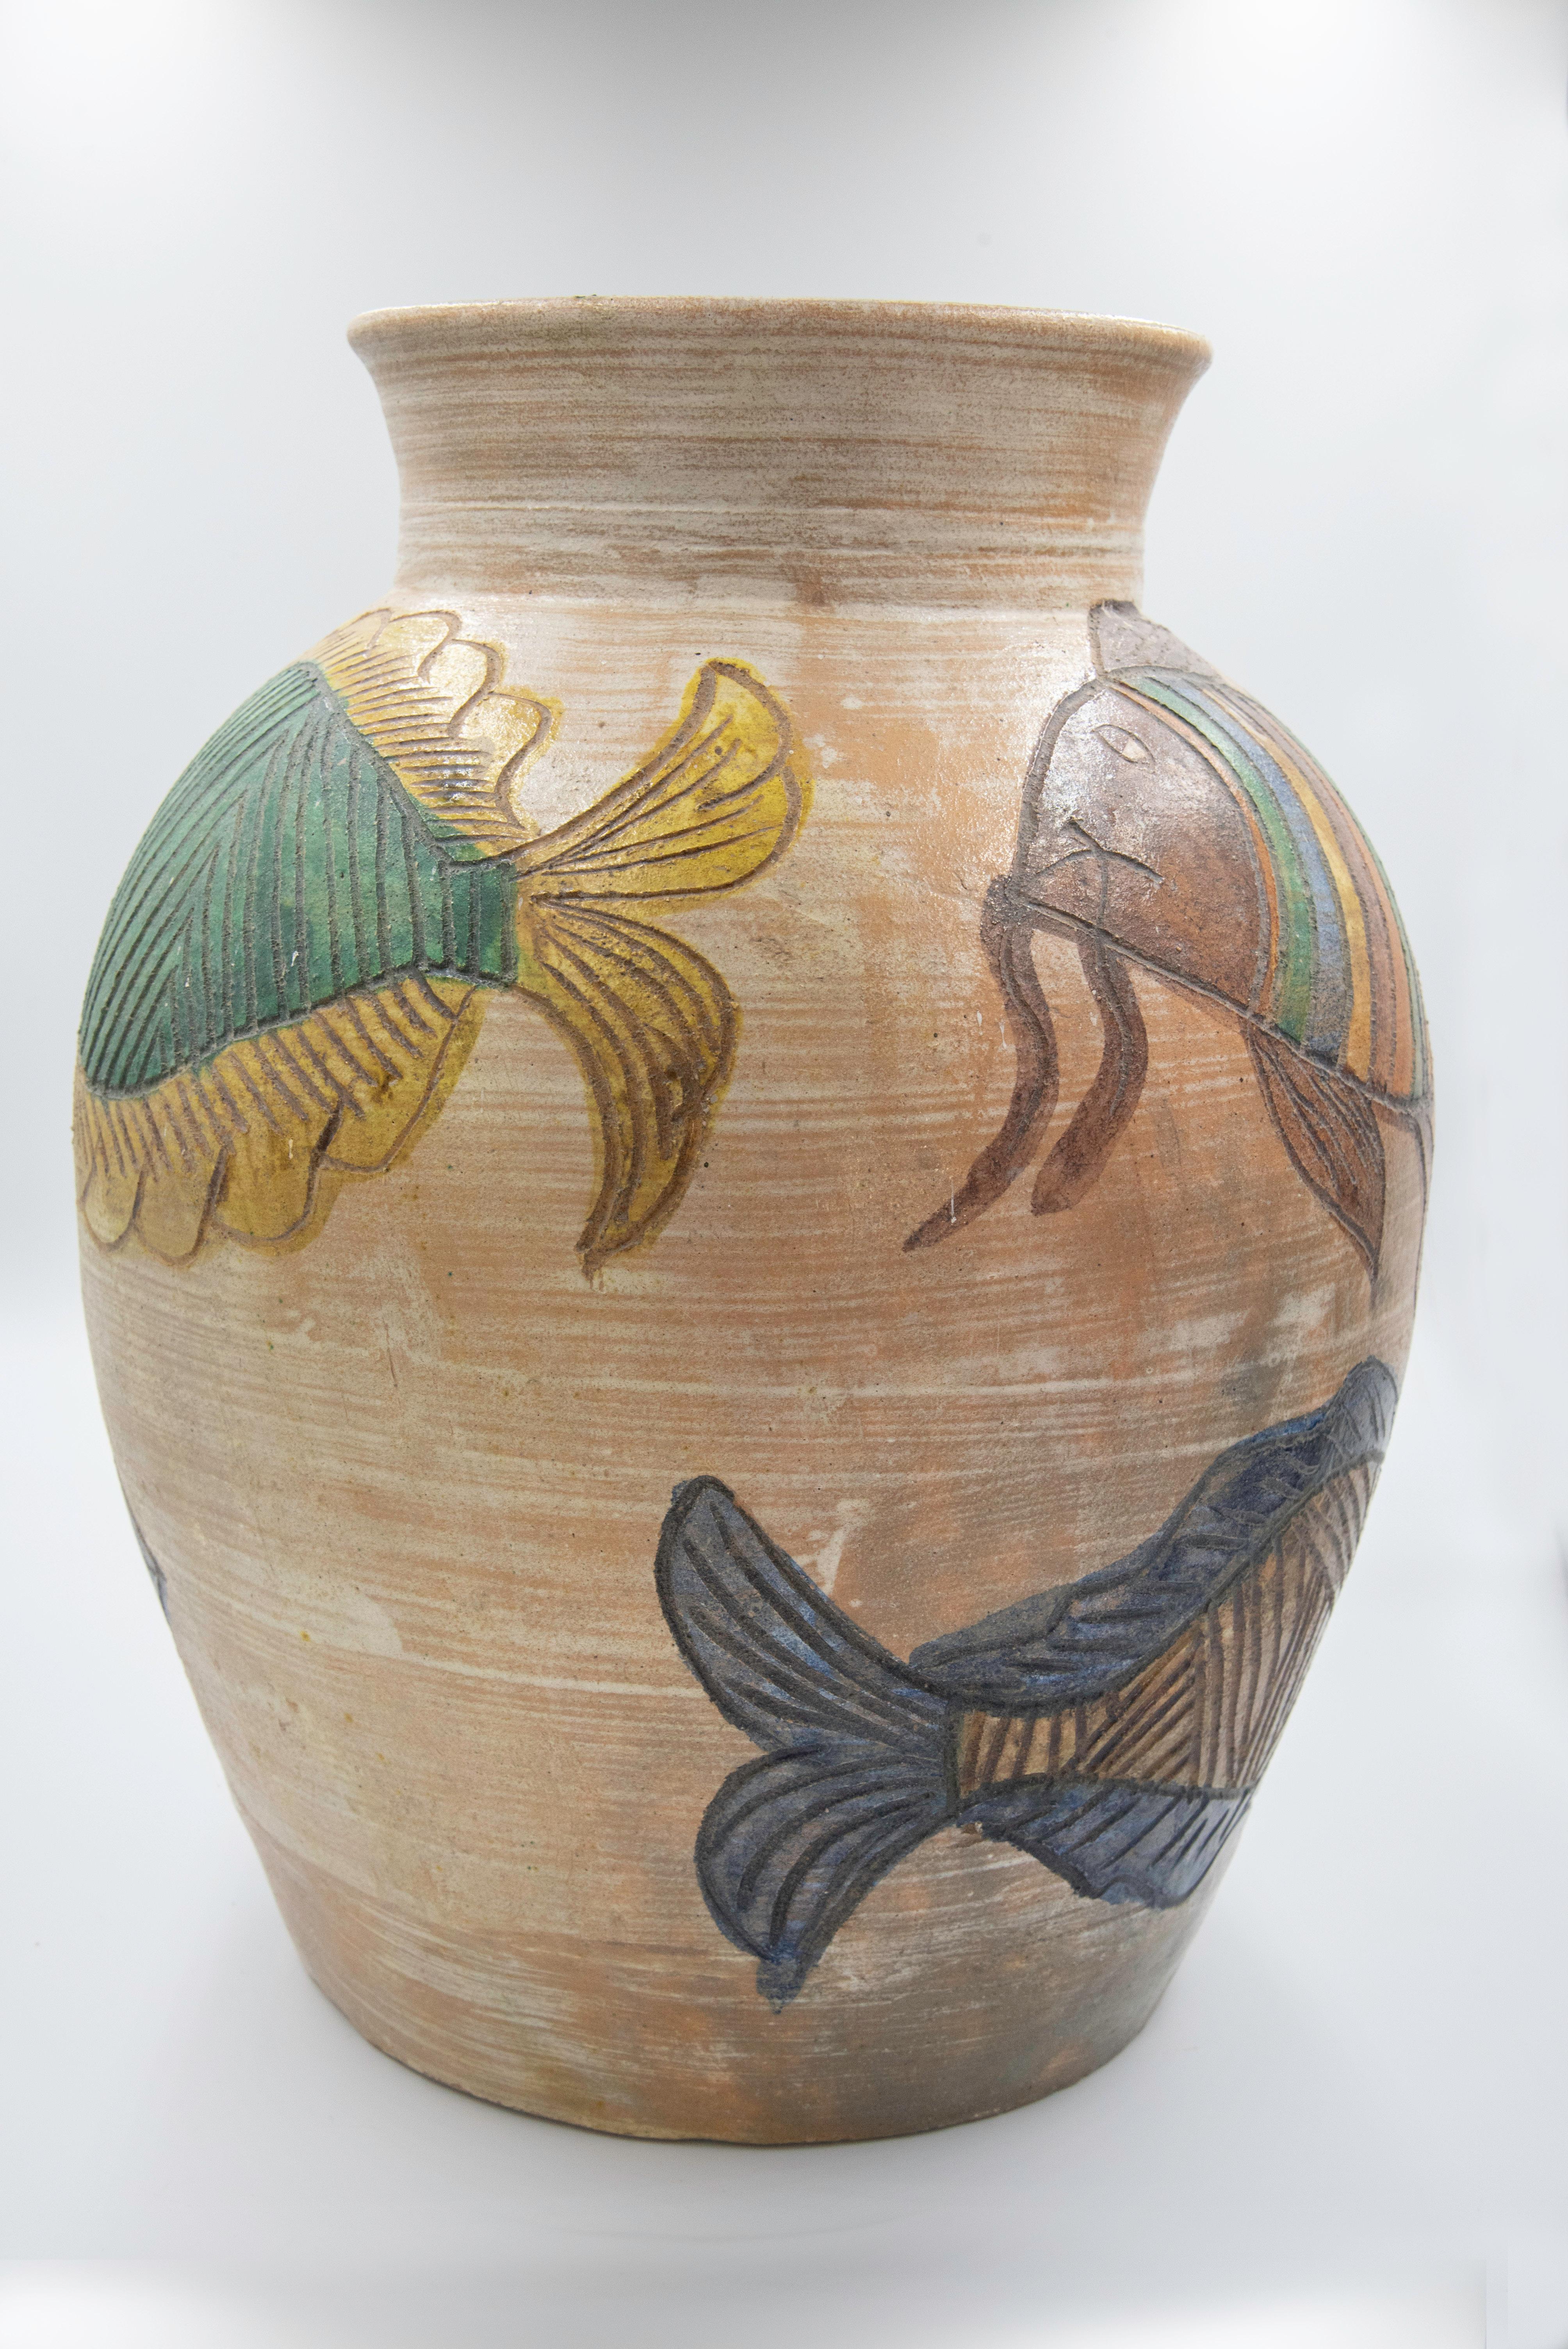 Dolores Porras Enríquez est connue dans tout le Mexique et dans le monde entier pour être la créatrice d'une technique enracinée dans la terre de Oaxaca : la poterie de couleur naturelle, émaillée et décorée de motifs floraux et d'animaux colorés